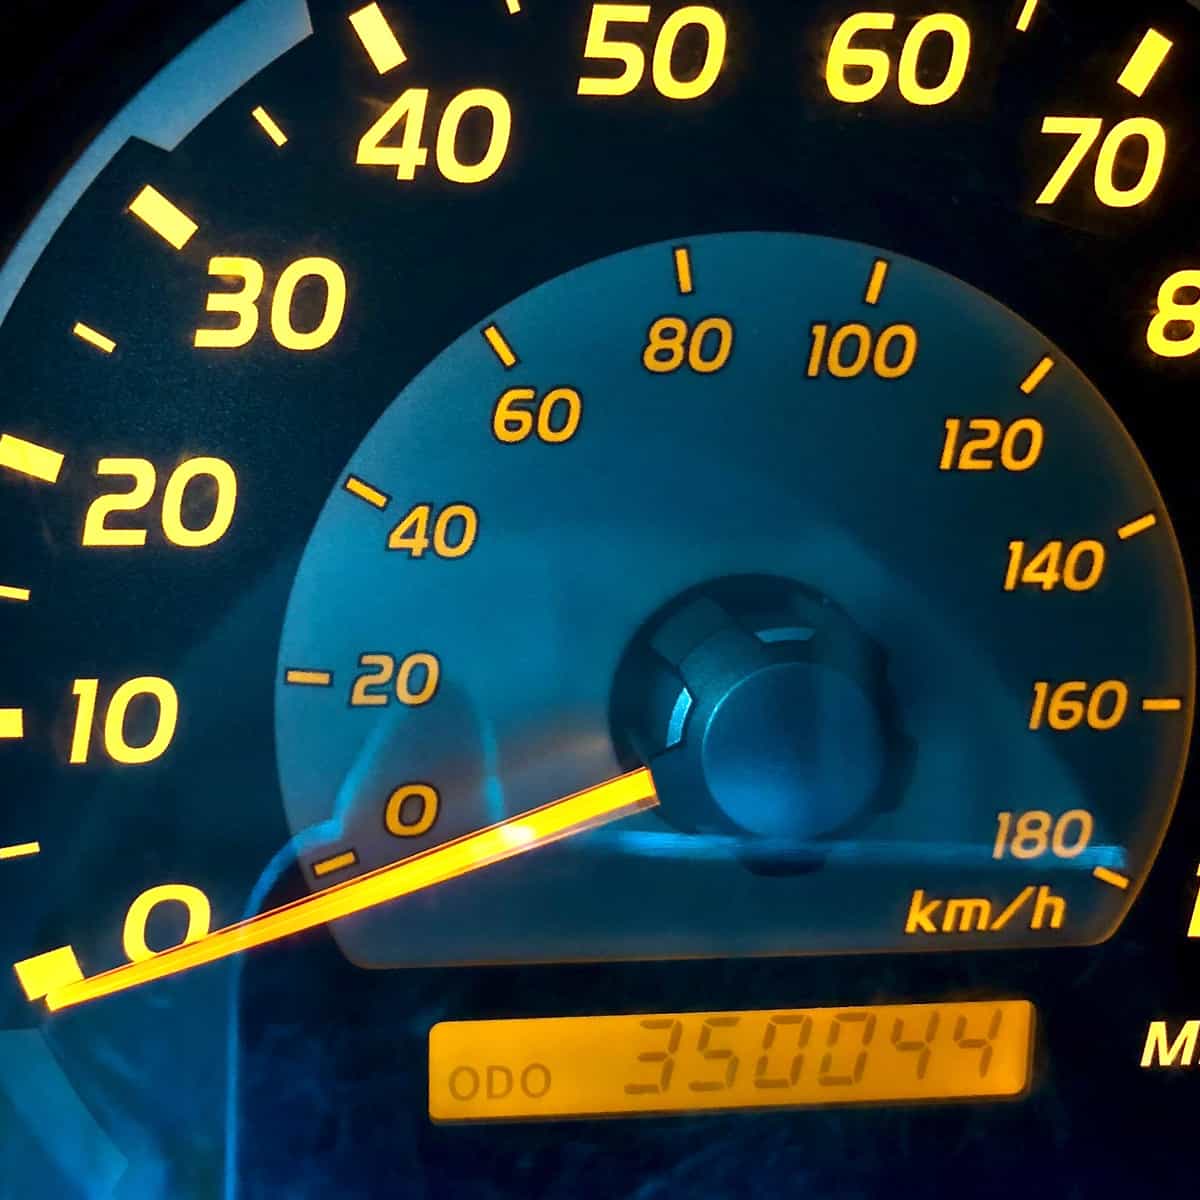 High mileage on vehicle odometer